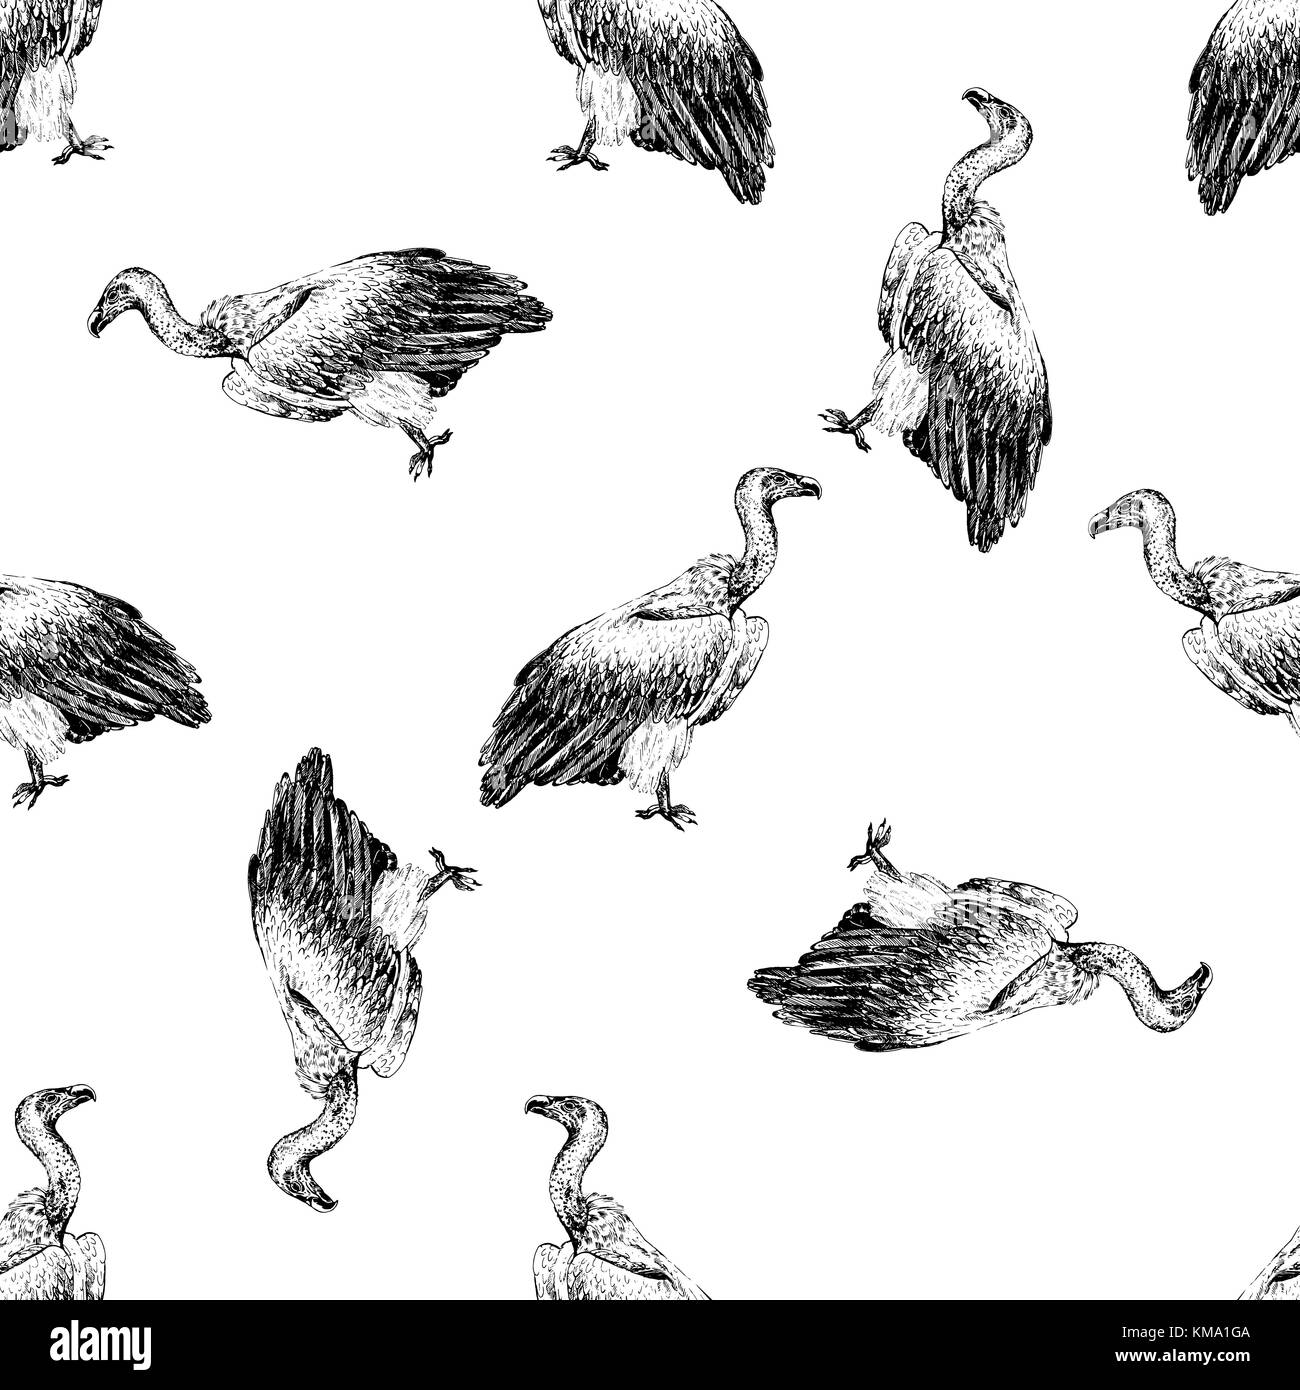 Modello senza giunture di mano il bozzetto stile africano avvoltoio. illustrazione vettoriale isolati su sfondo bianco. Illustrazione Vettoriale